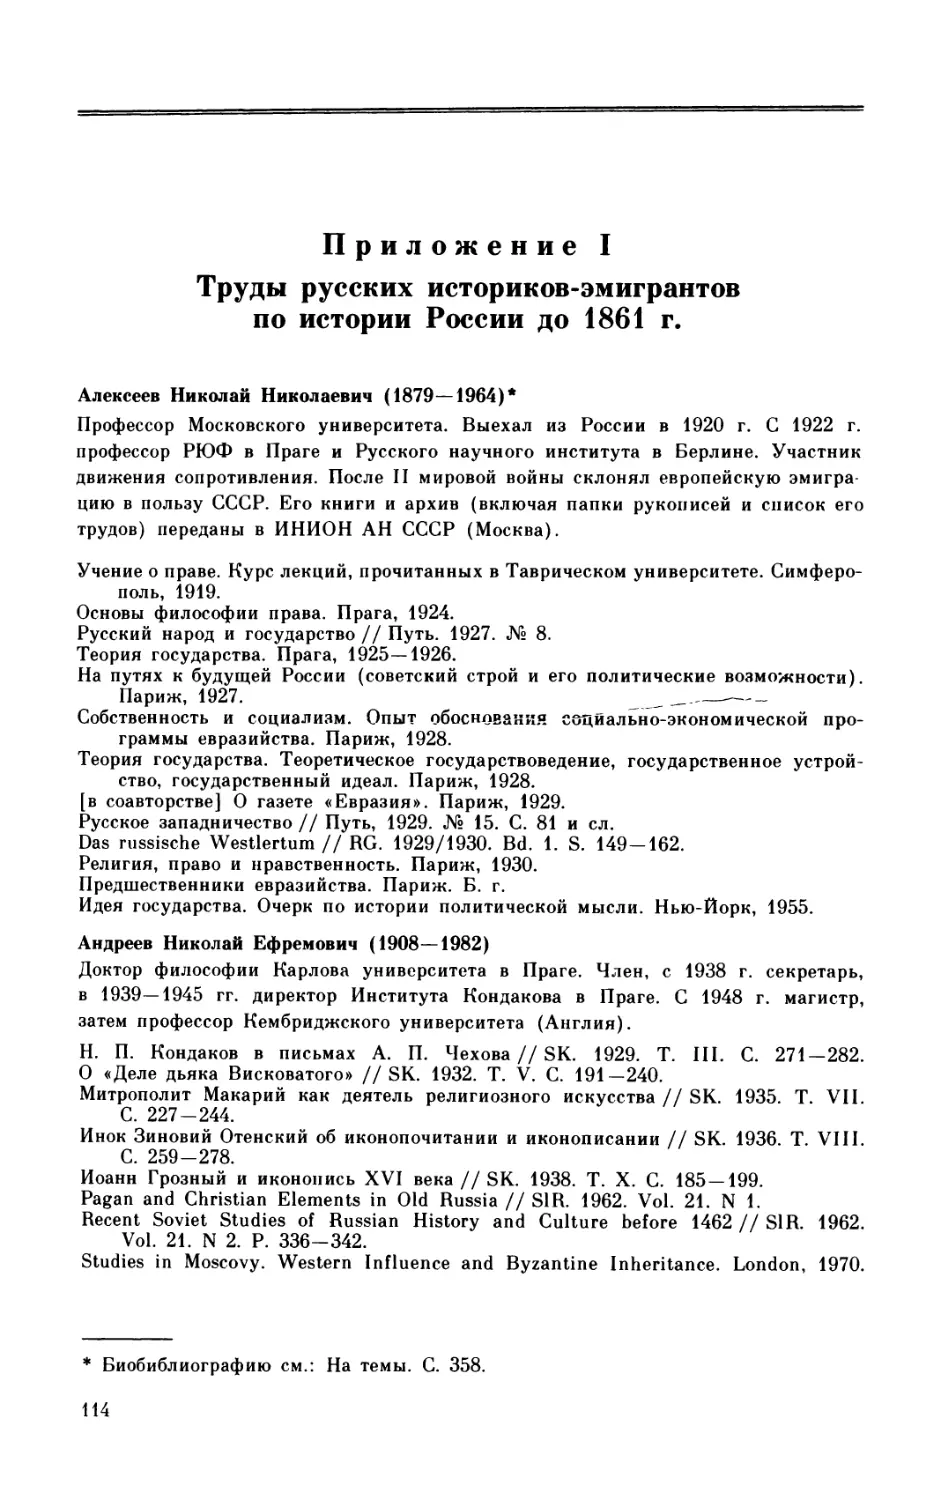 Приложение I. Труды русских историков-эмигрантов по истории России по 1861 г